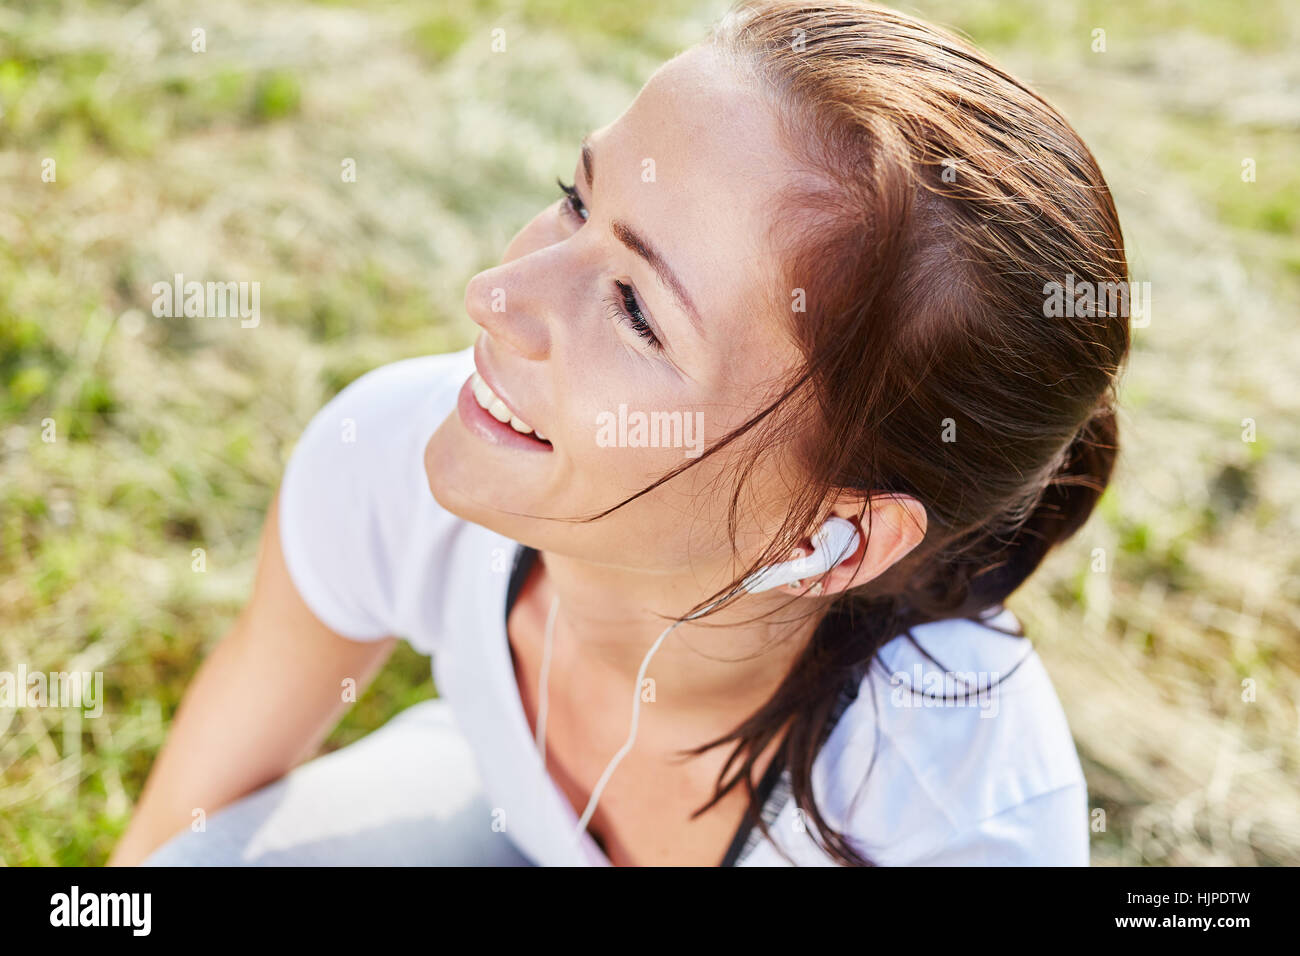 Junge Frau hört MP3-Player vor ihrem jogging Kurs Stockfoto